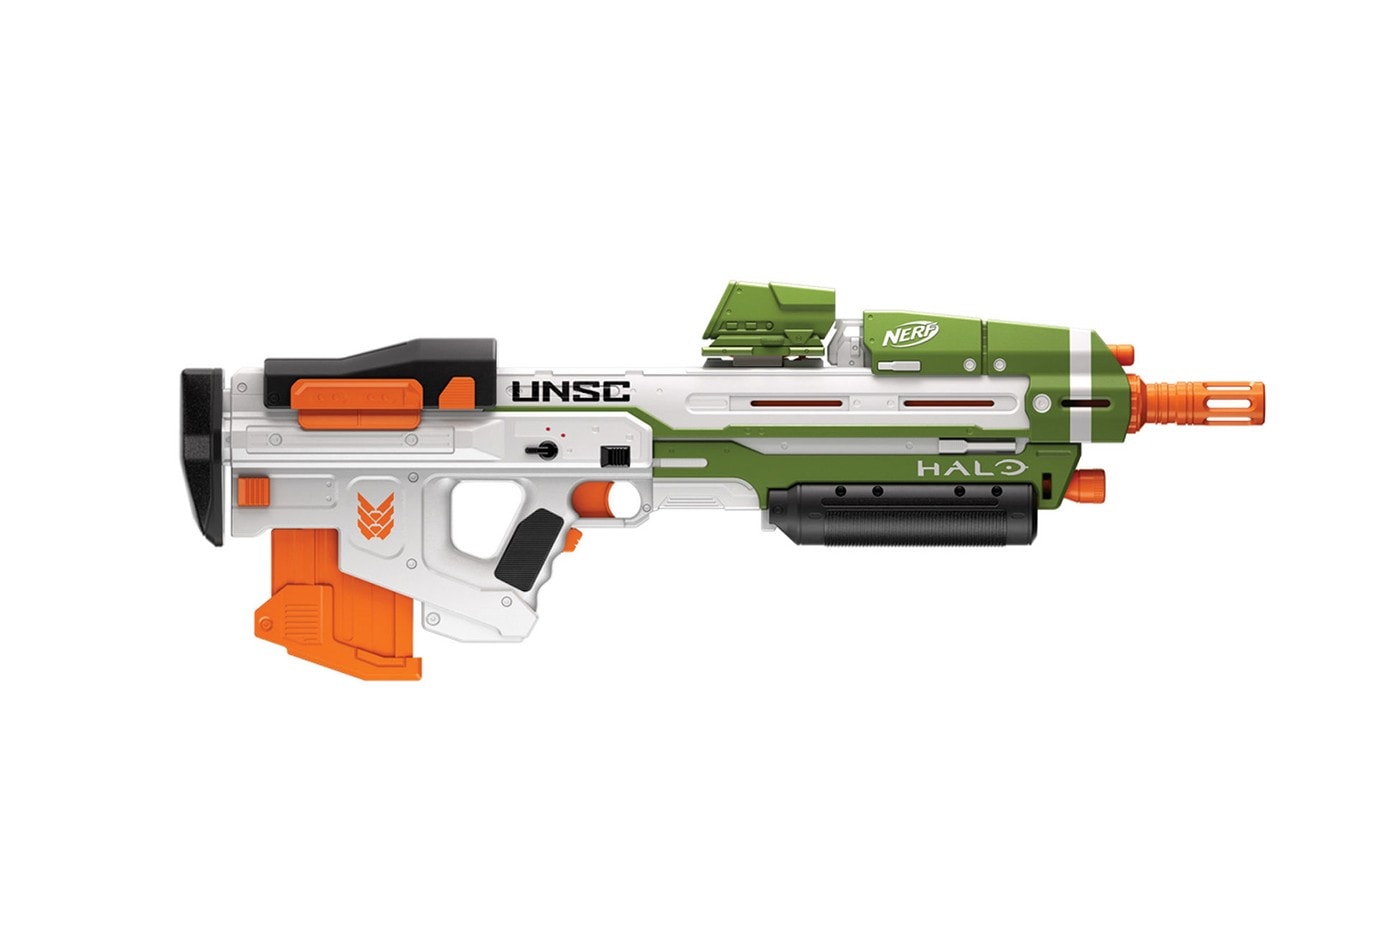 孩之寶以《Halo》為主題推出 NERF Blasters 系列玩具槍